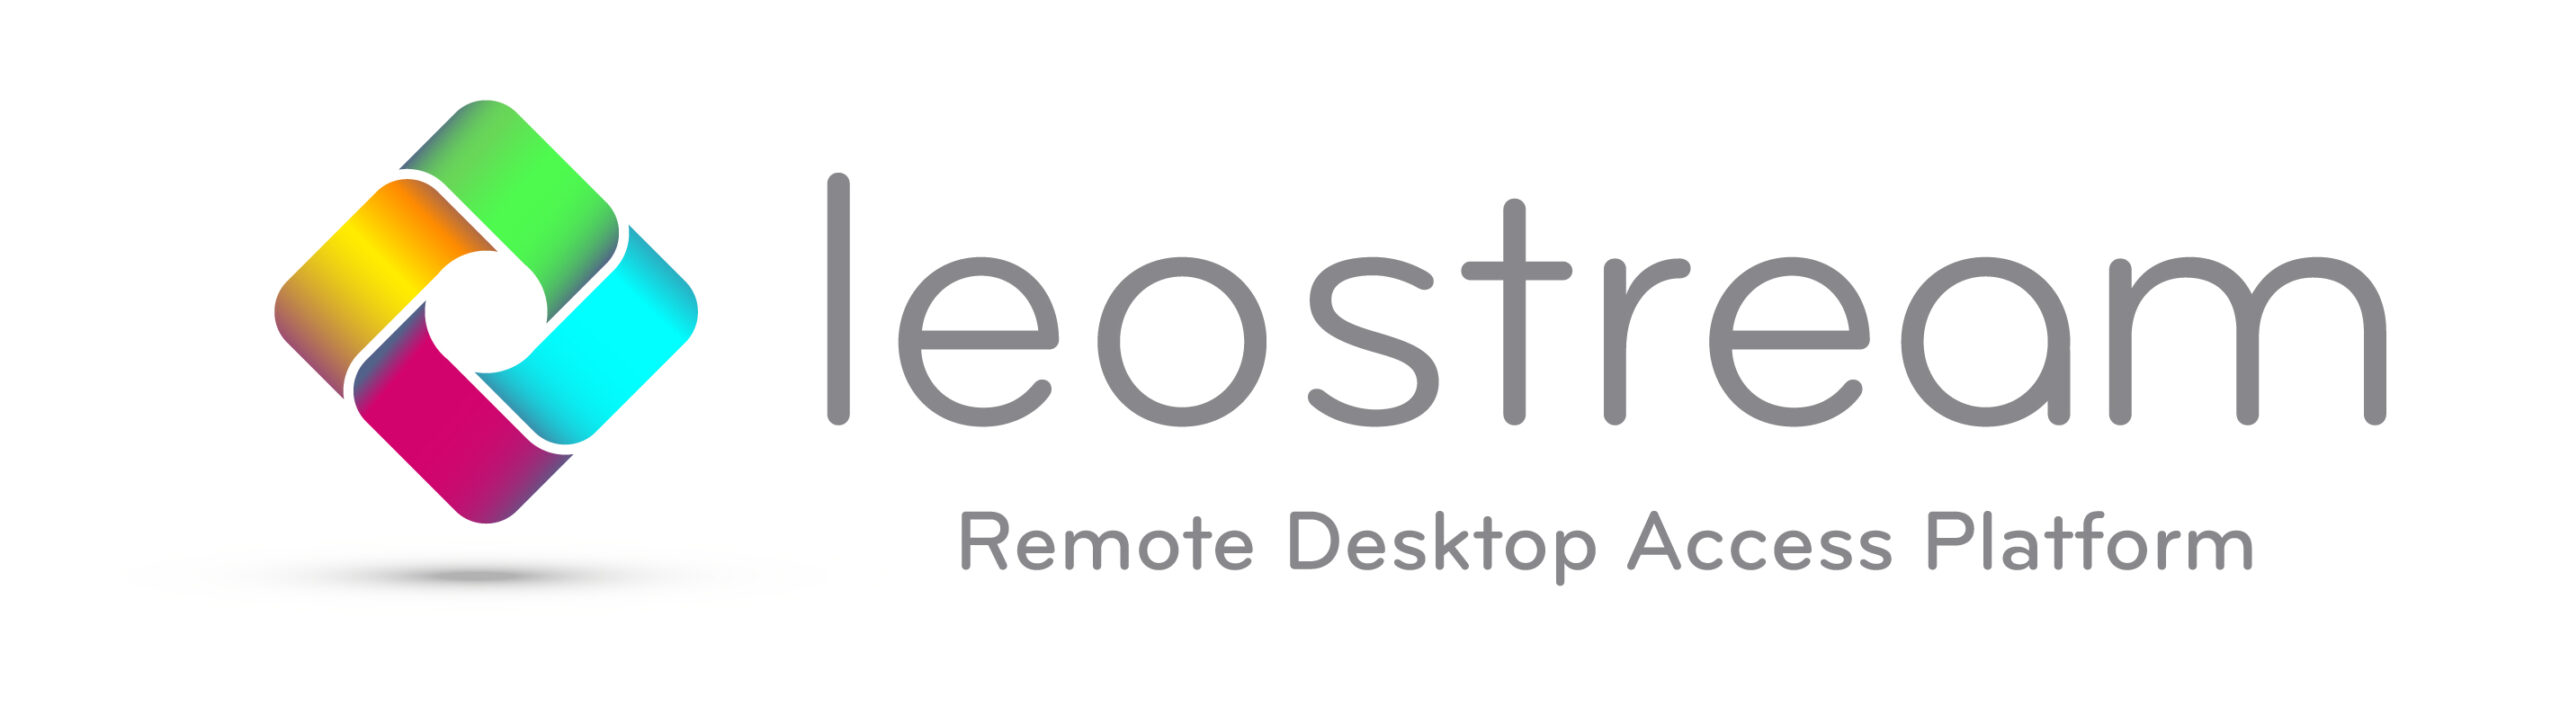 Leostream company logo